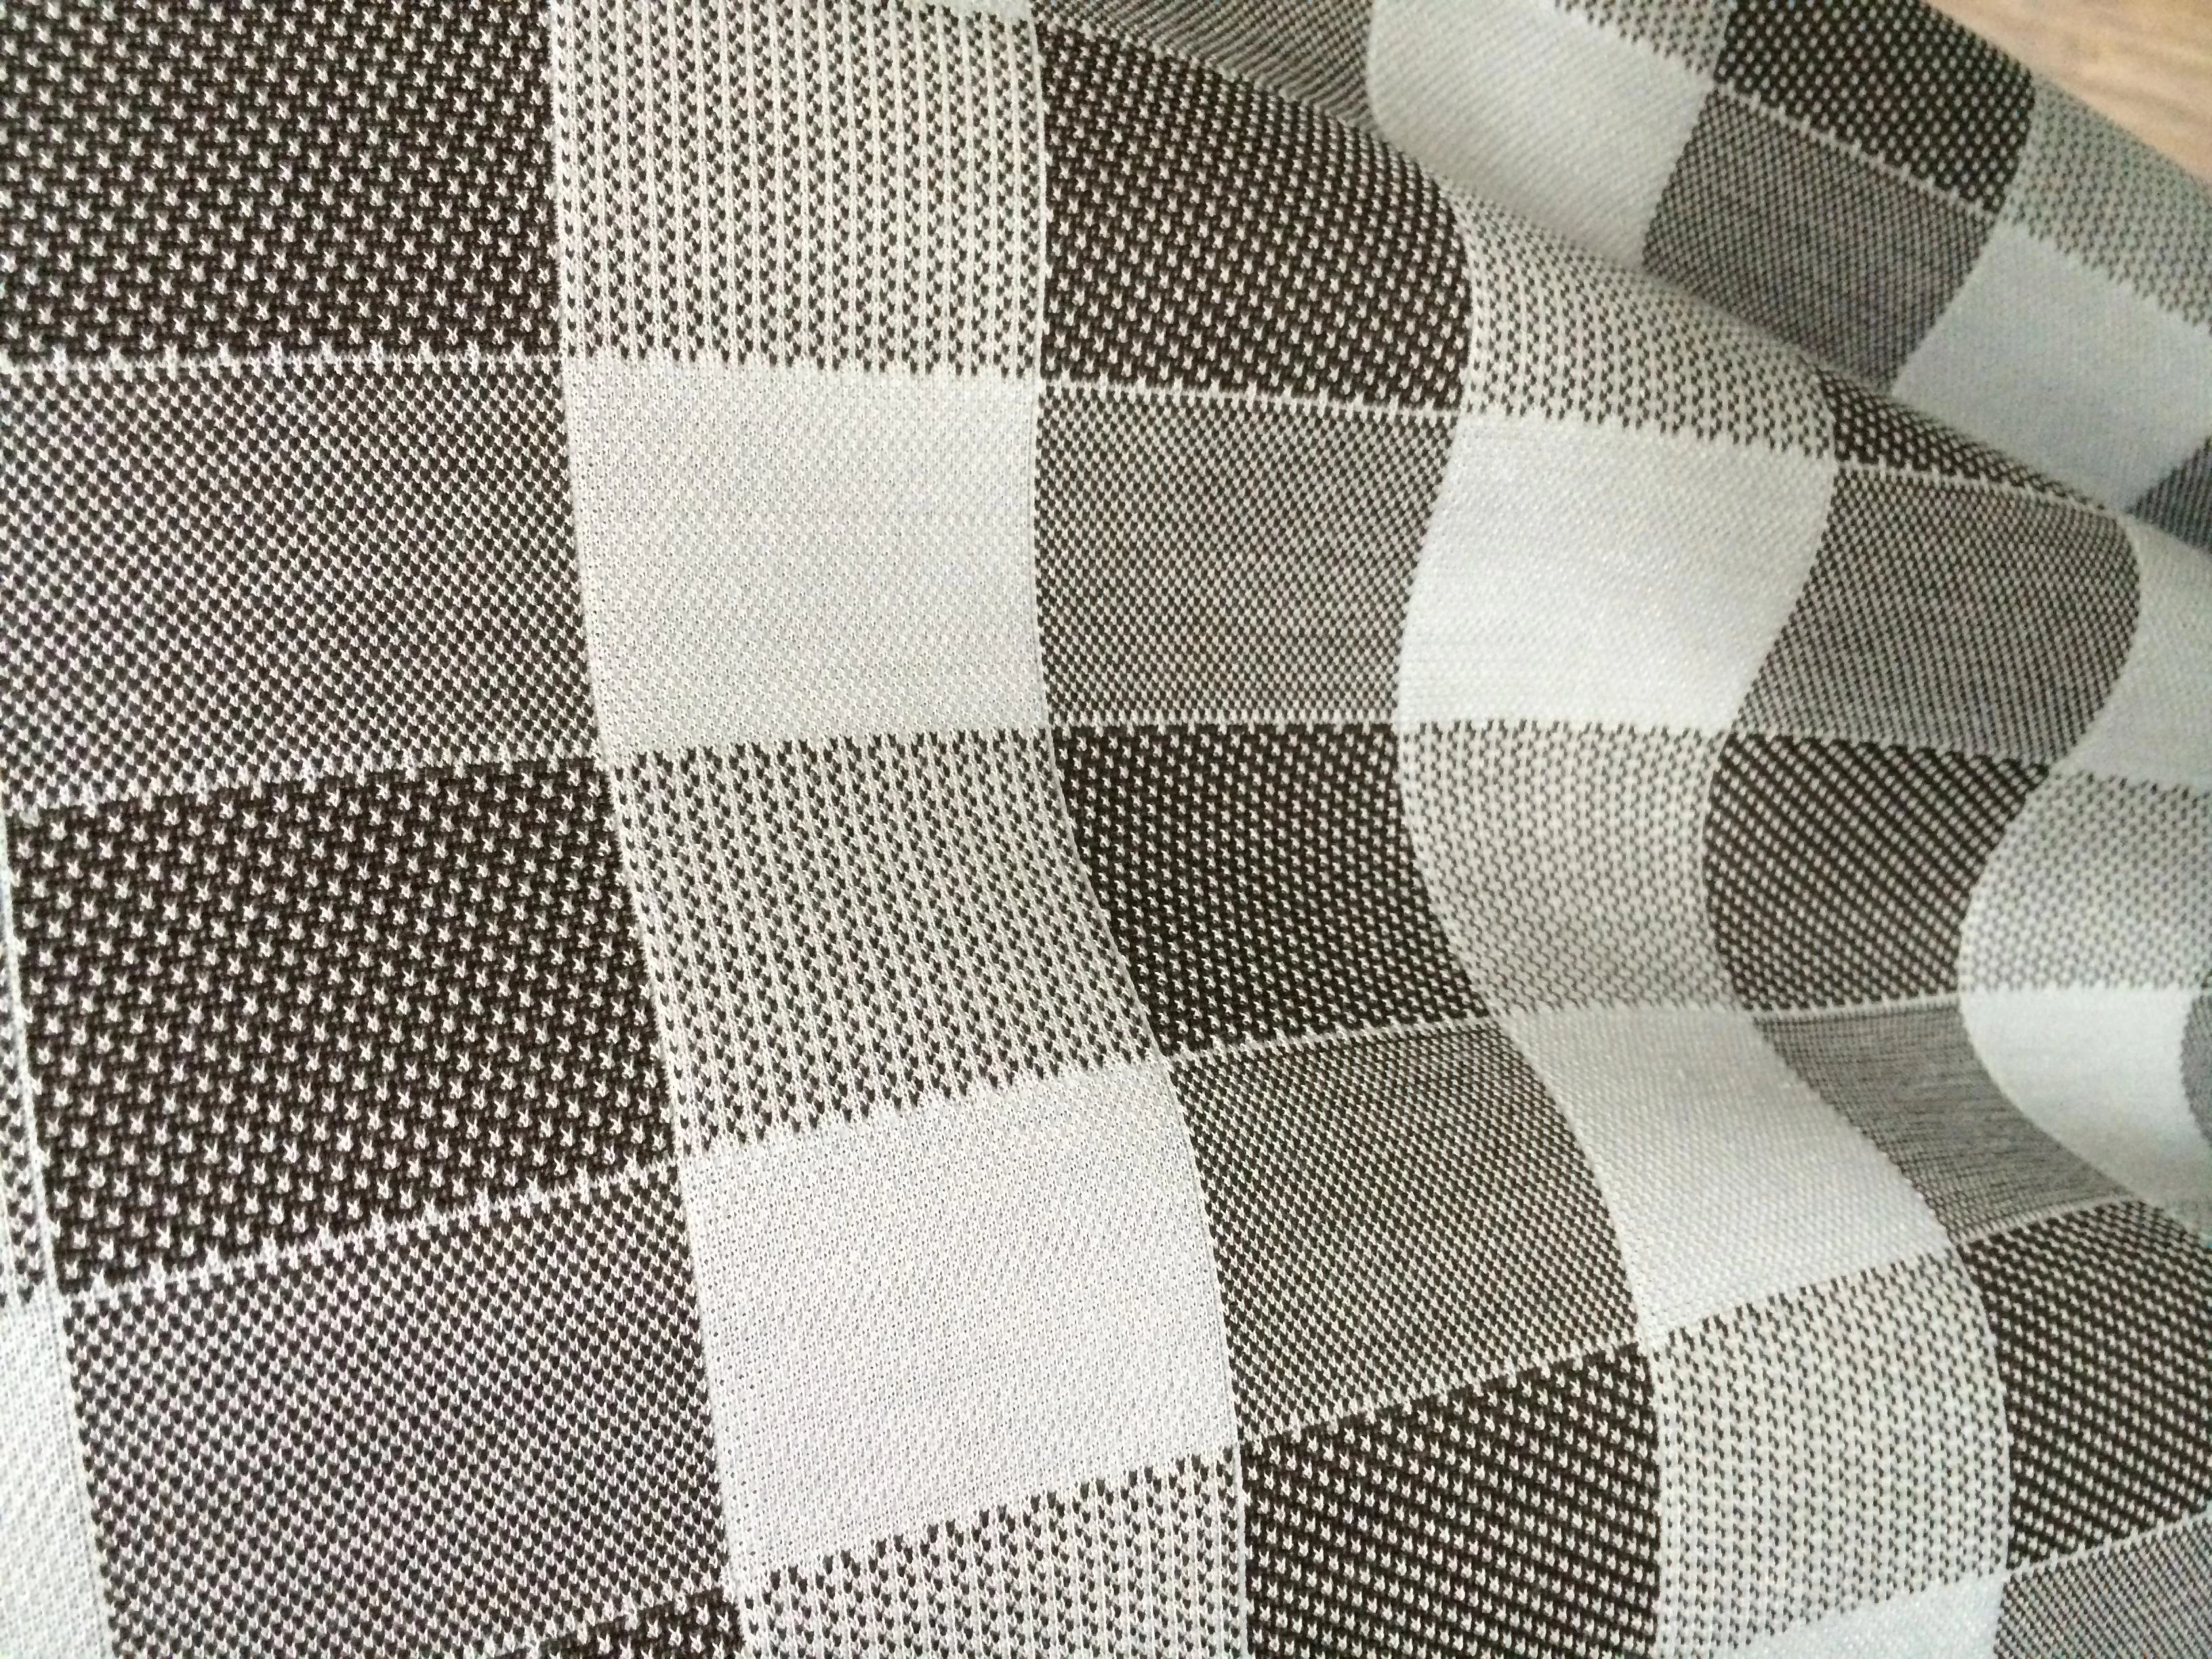 jacquard knit  bamboo mattress fabric supply